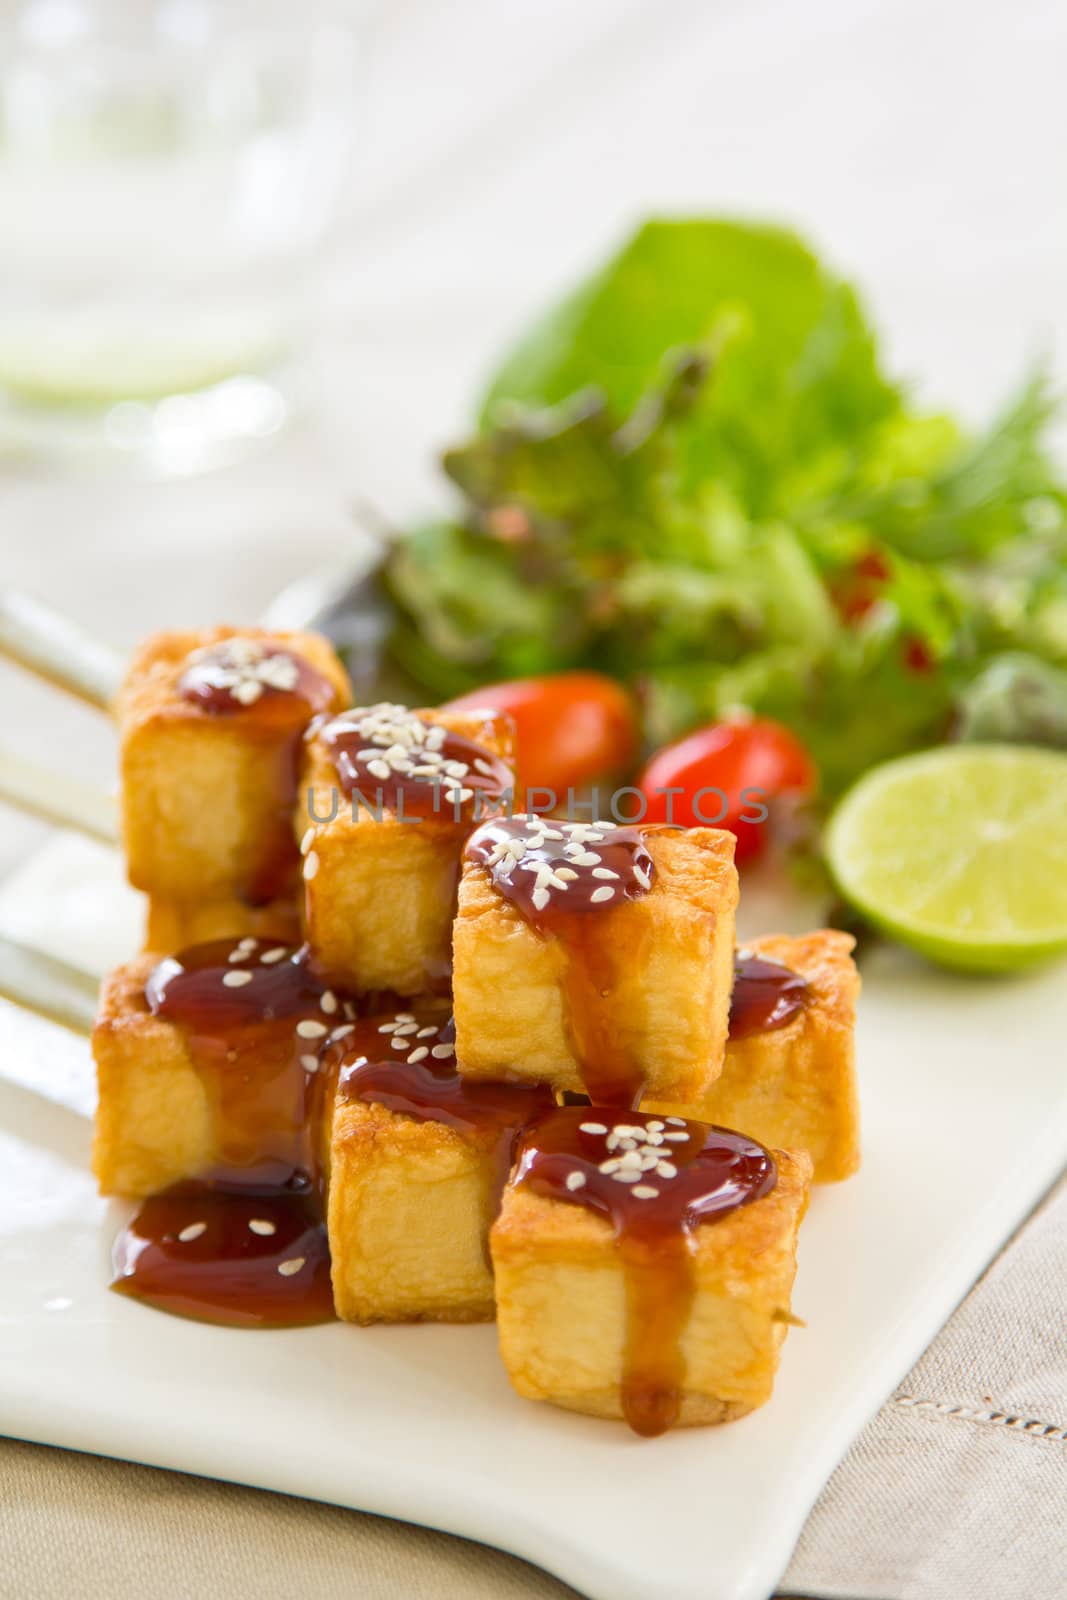 Grilled Tofu with teriyaki sauce and salad